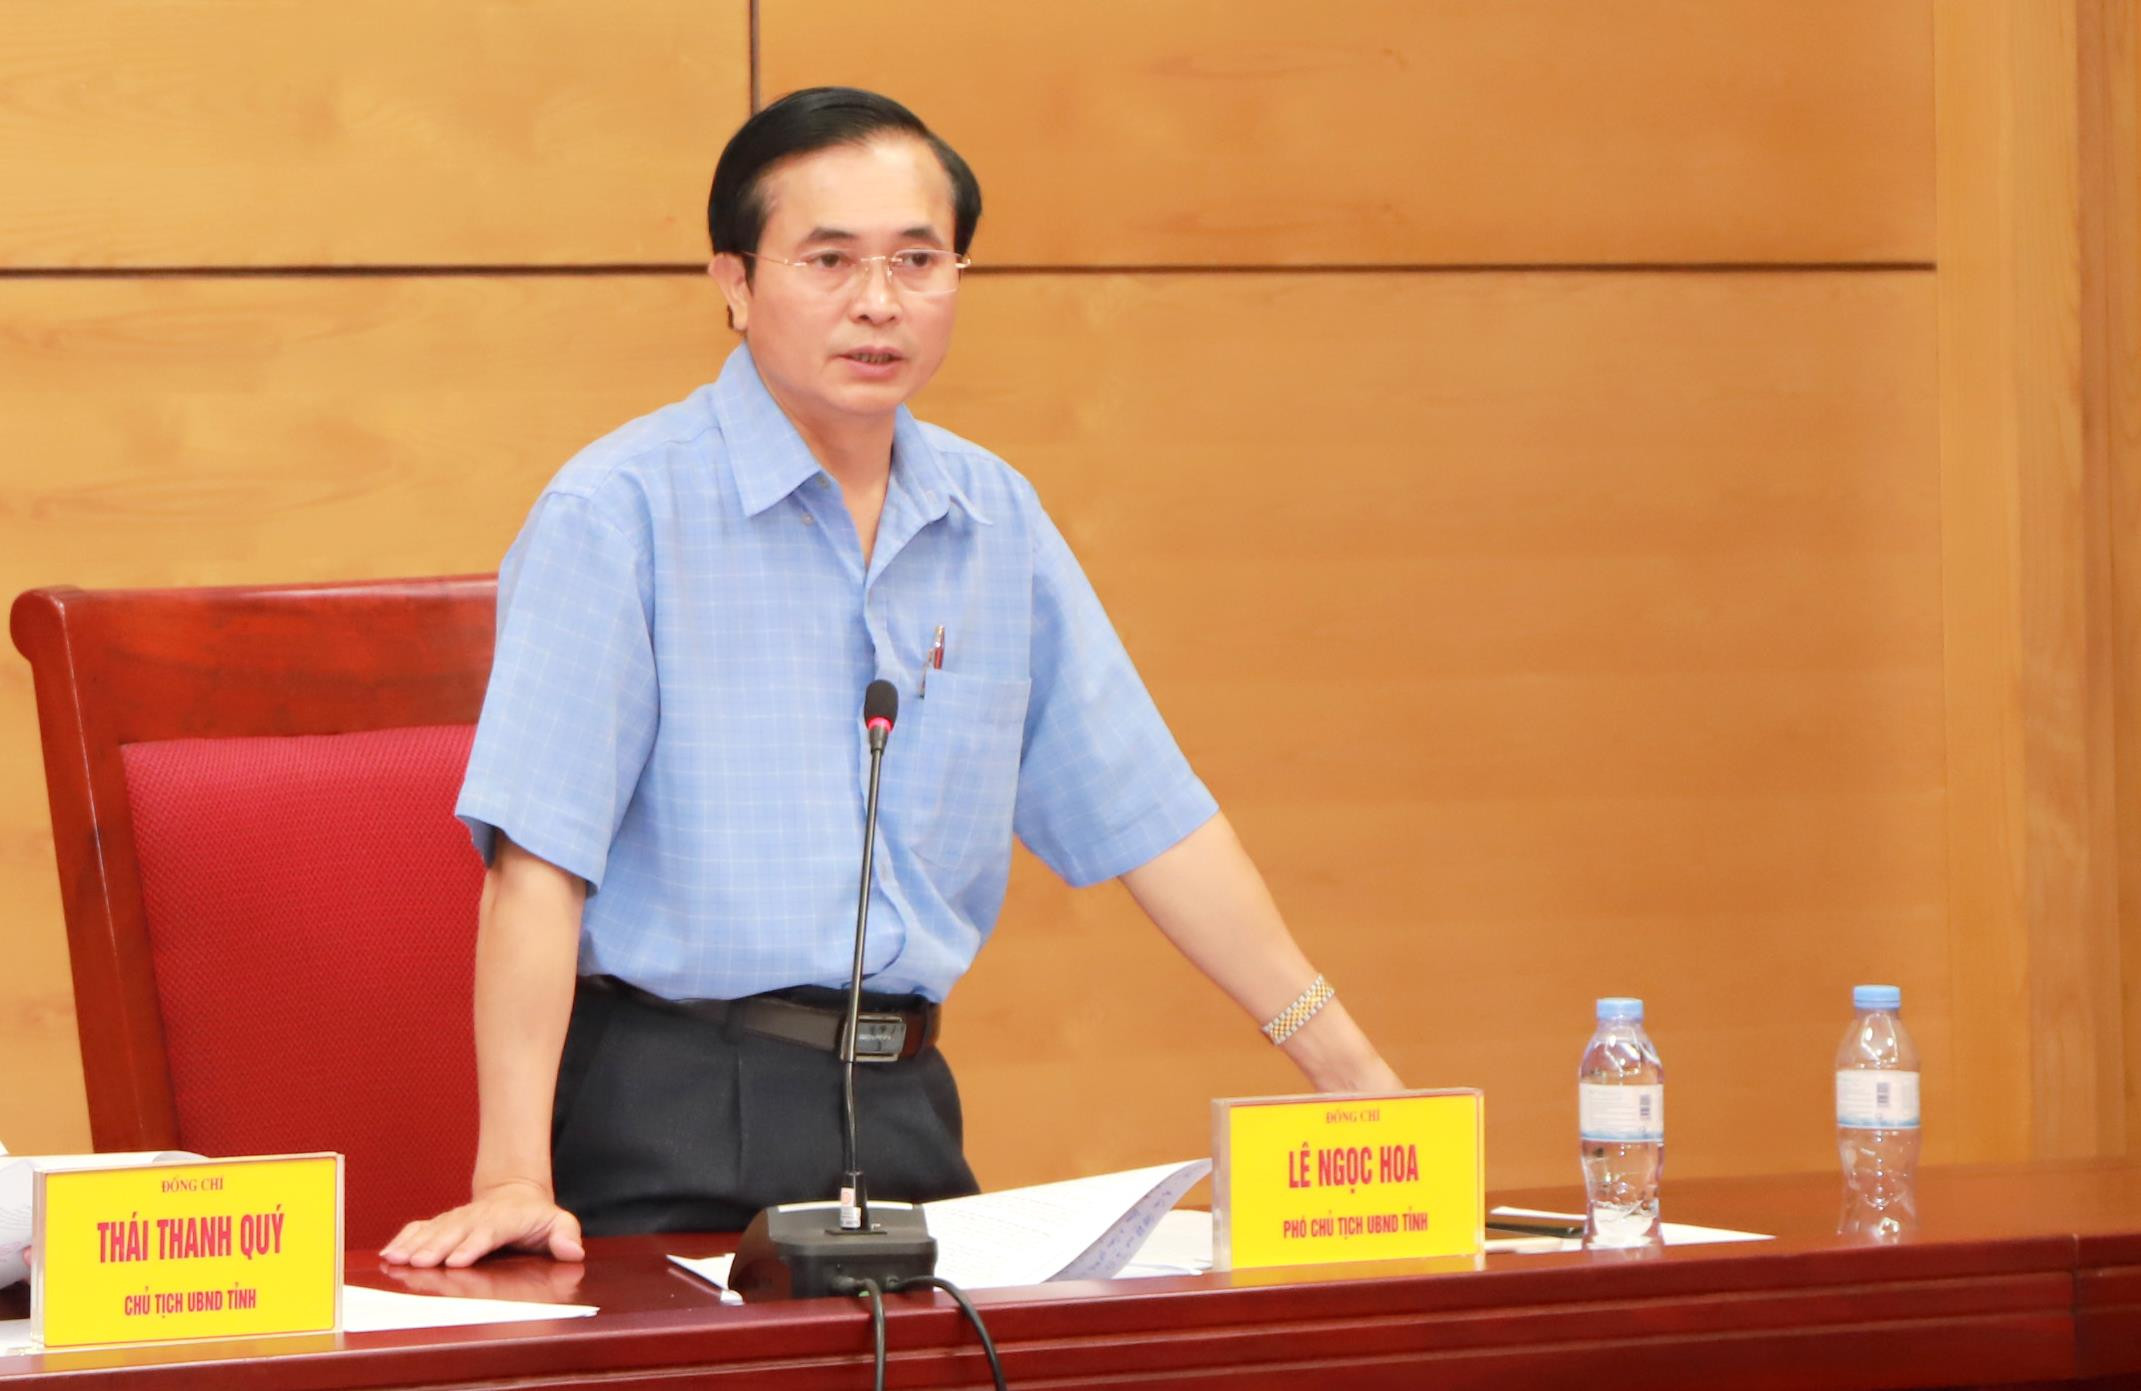 Phó  Chủ tịch UBND tỉnh Lê Ngọc Hoa phát biểu tại cuộc làm việc. Ảnh: Thành Duy